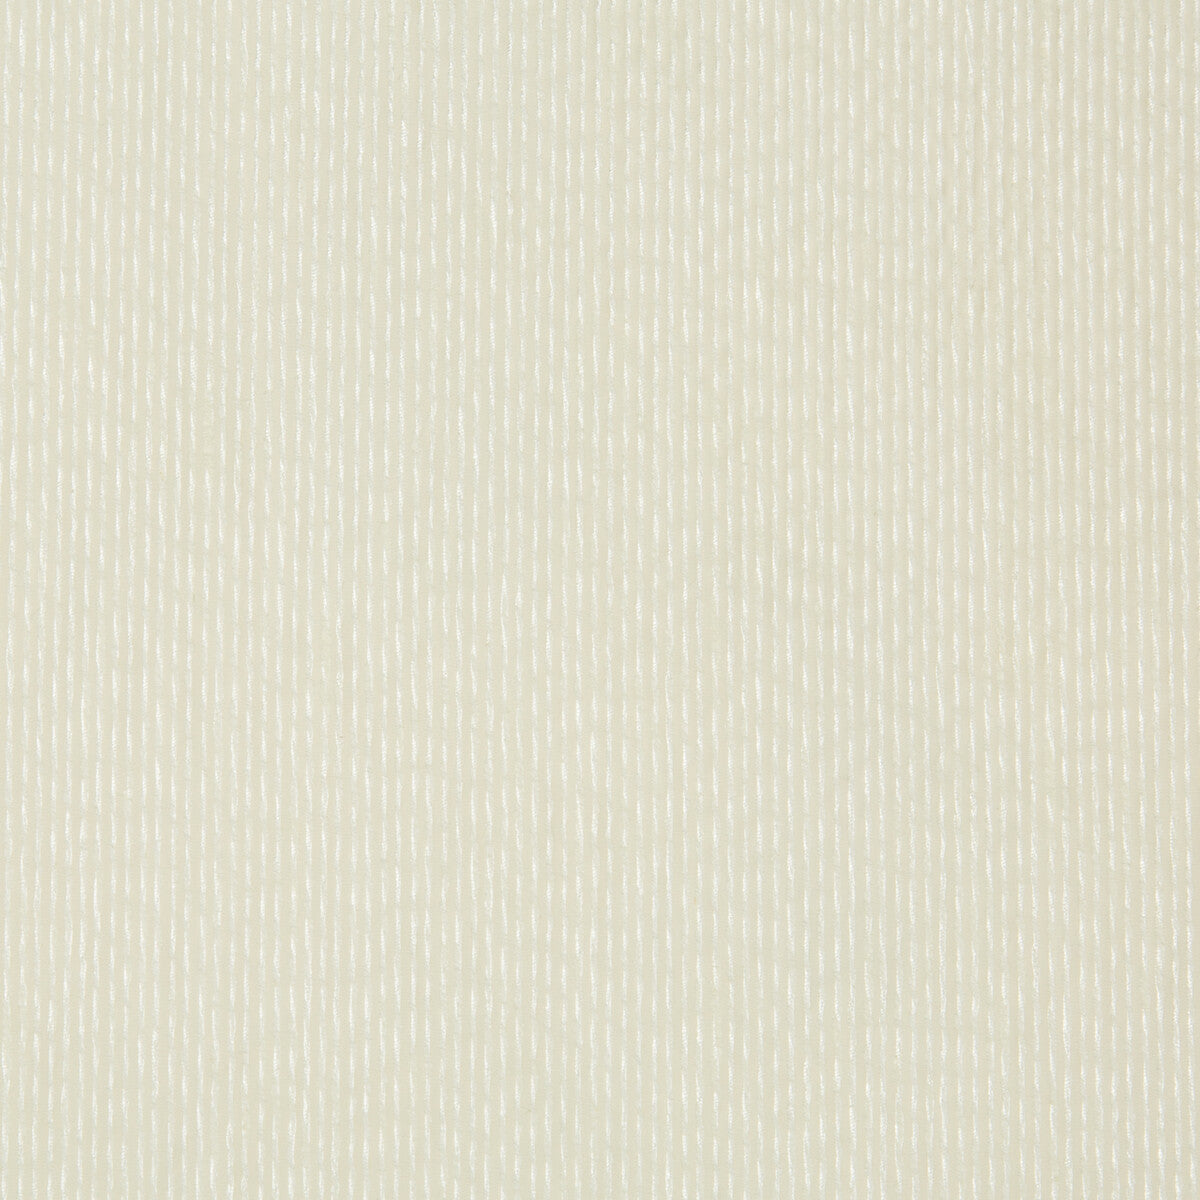 Kravet Basics fabric in 4435-1 color - pattern 4435.1.0 - by Kravet Basics